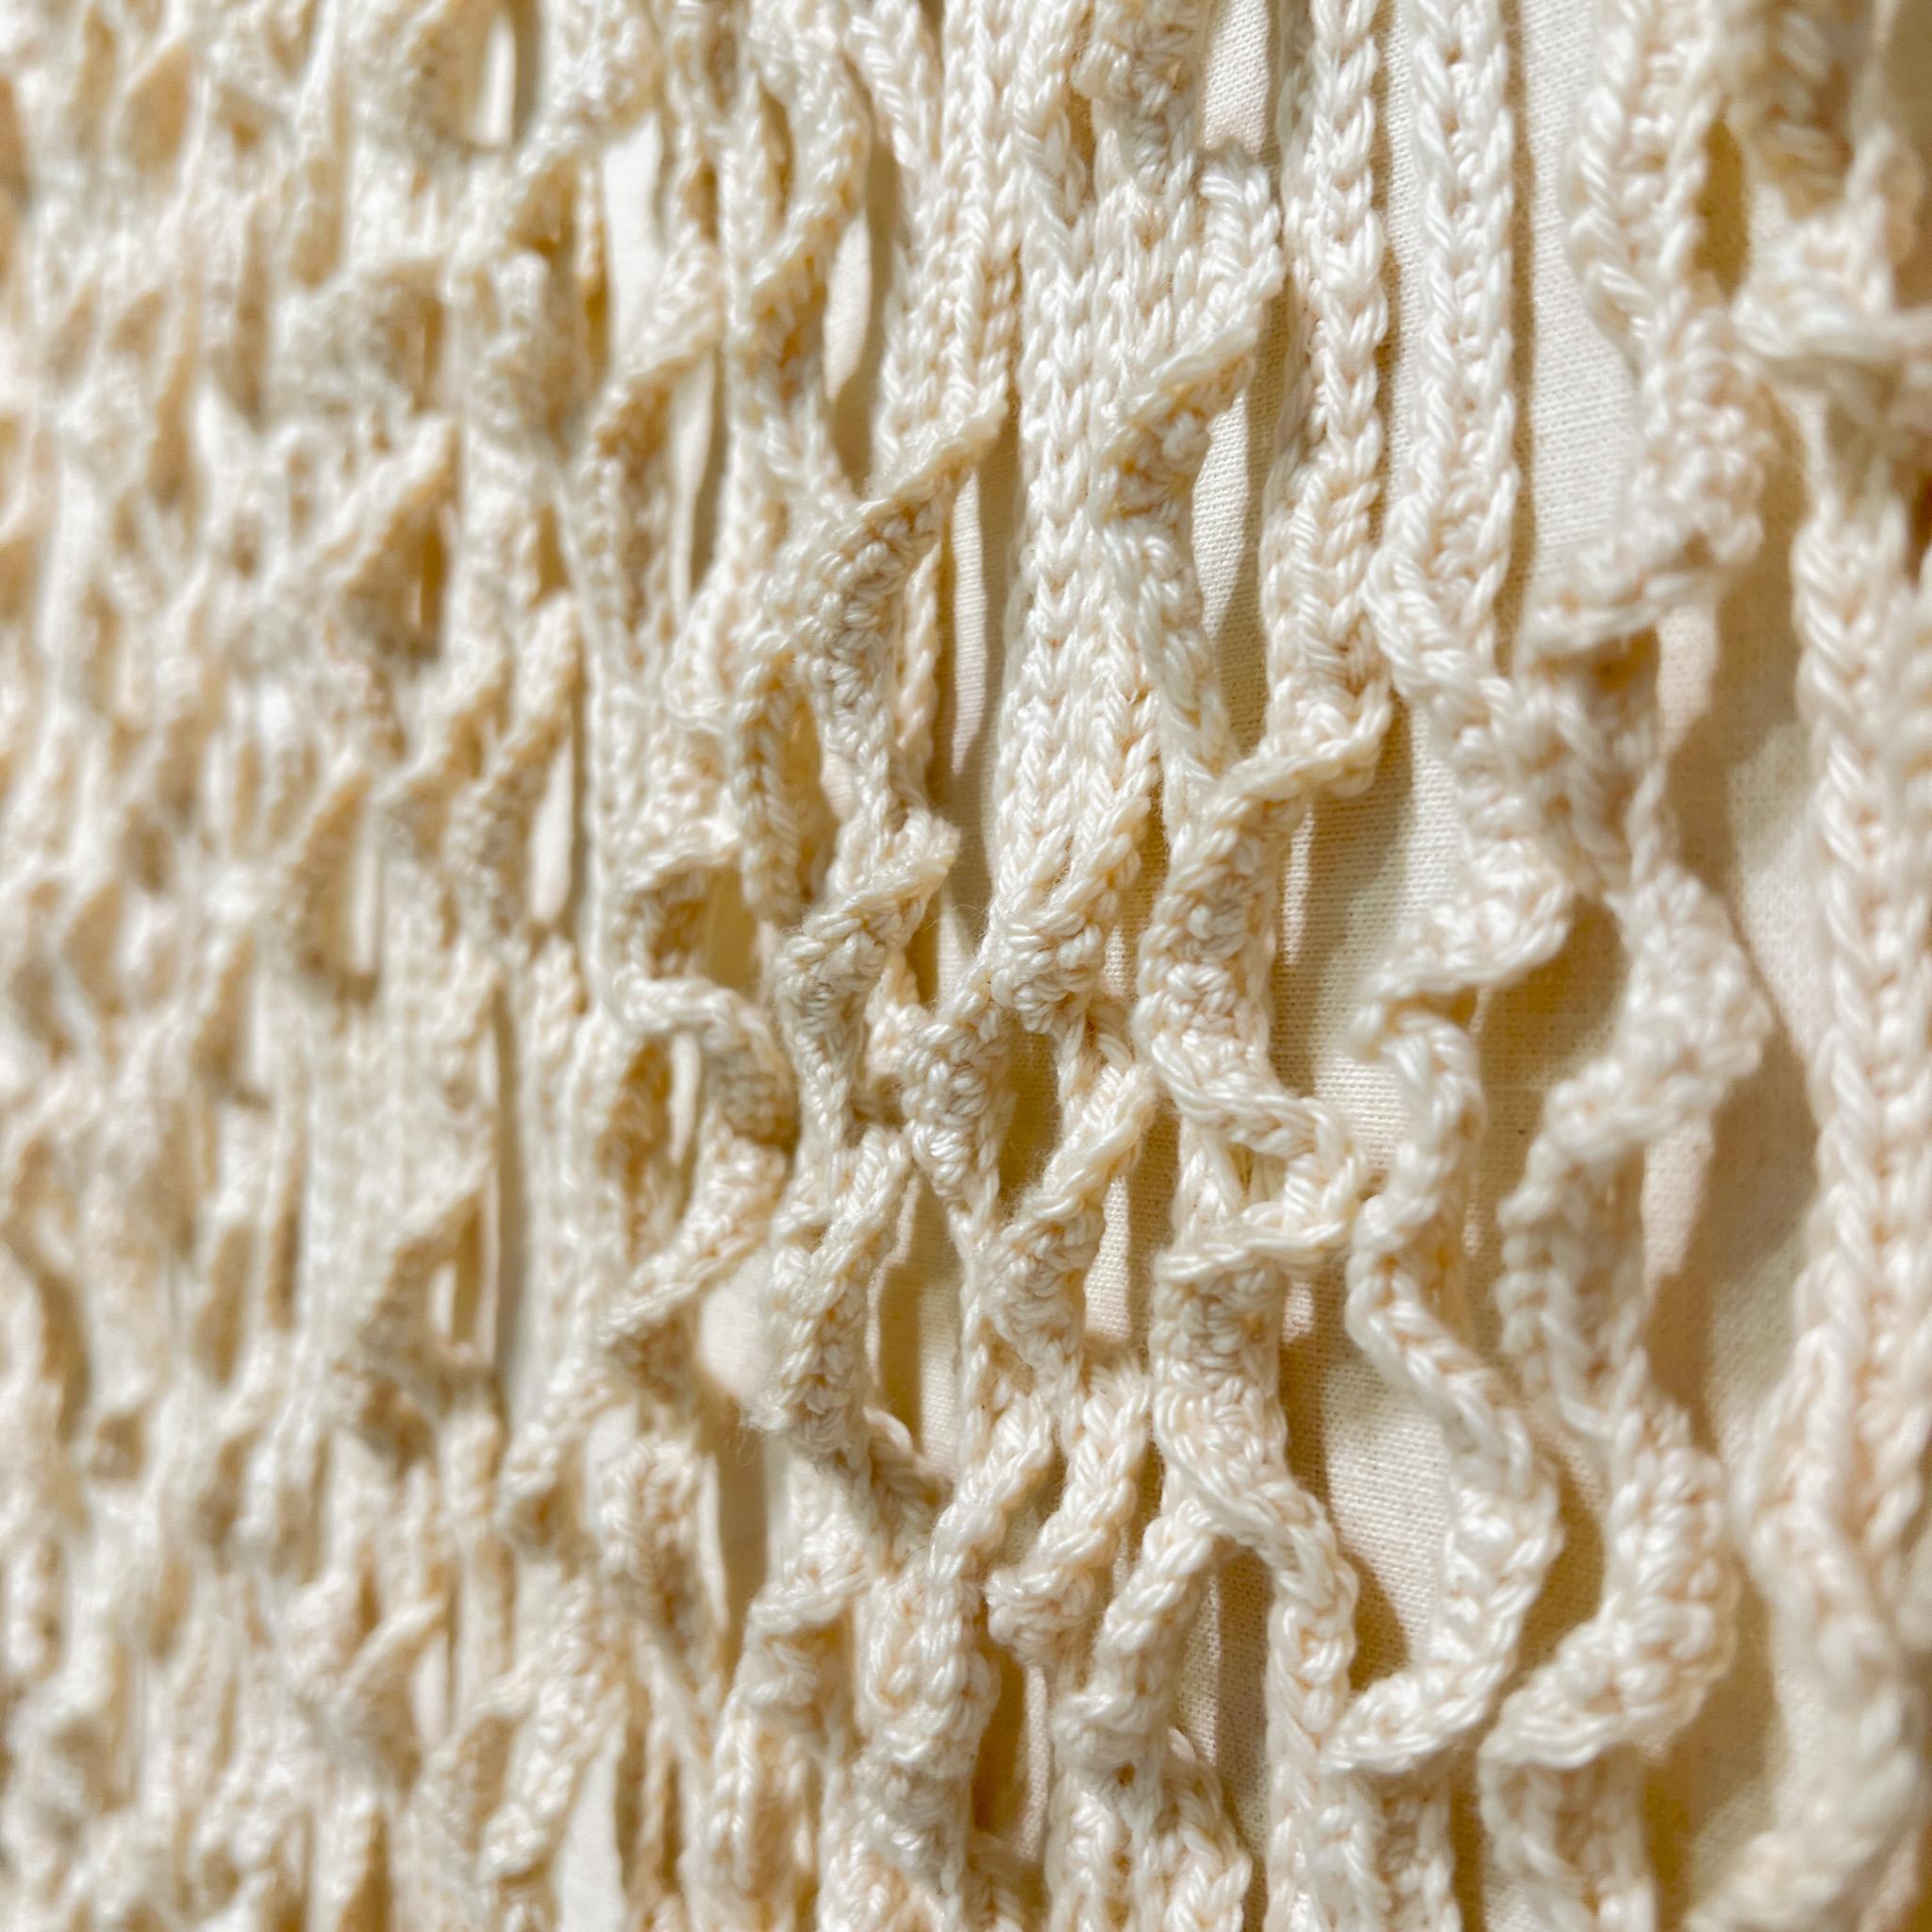 Niederländisches minimalistisches / Zero Textil-Kunstwerk aus gewebten Linien mit weißem Stoff (Baumwolle)